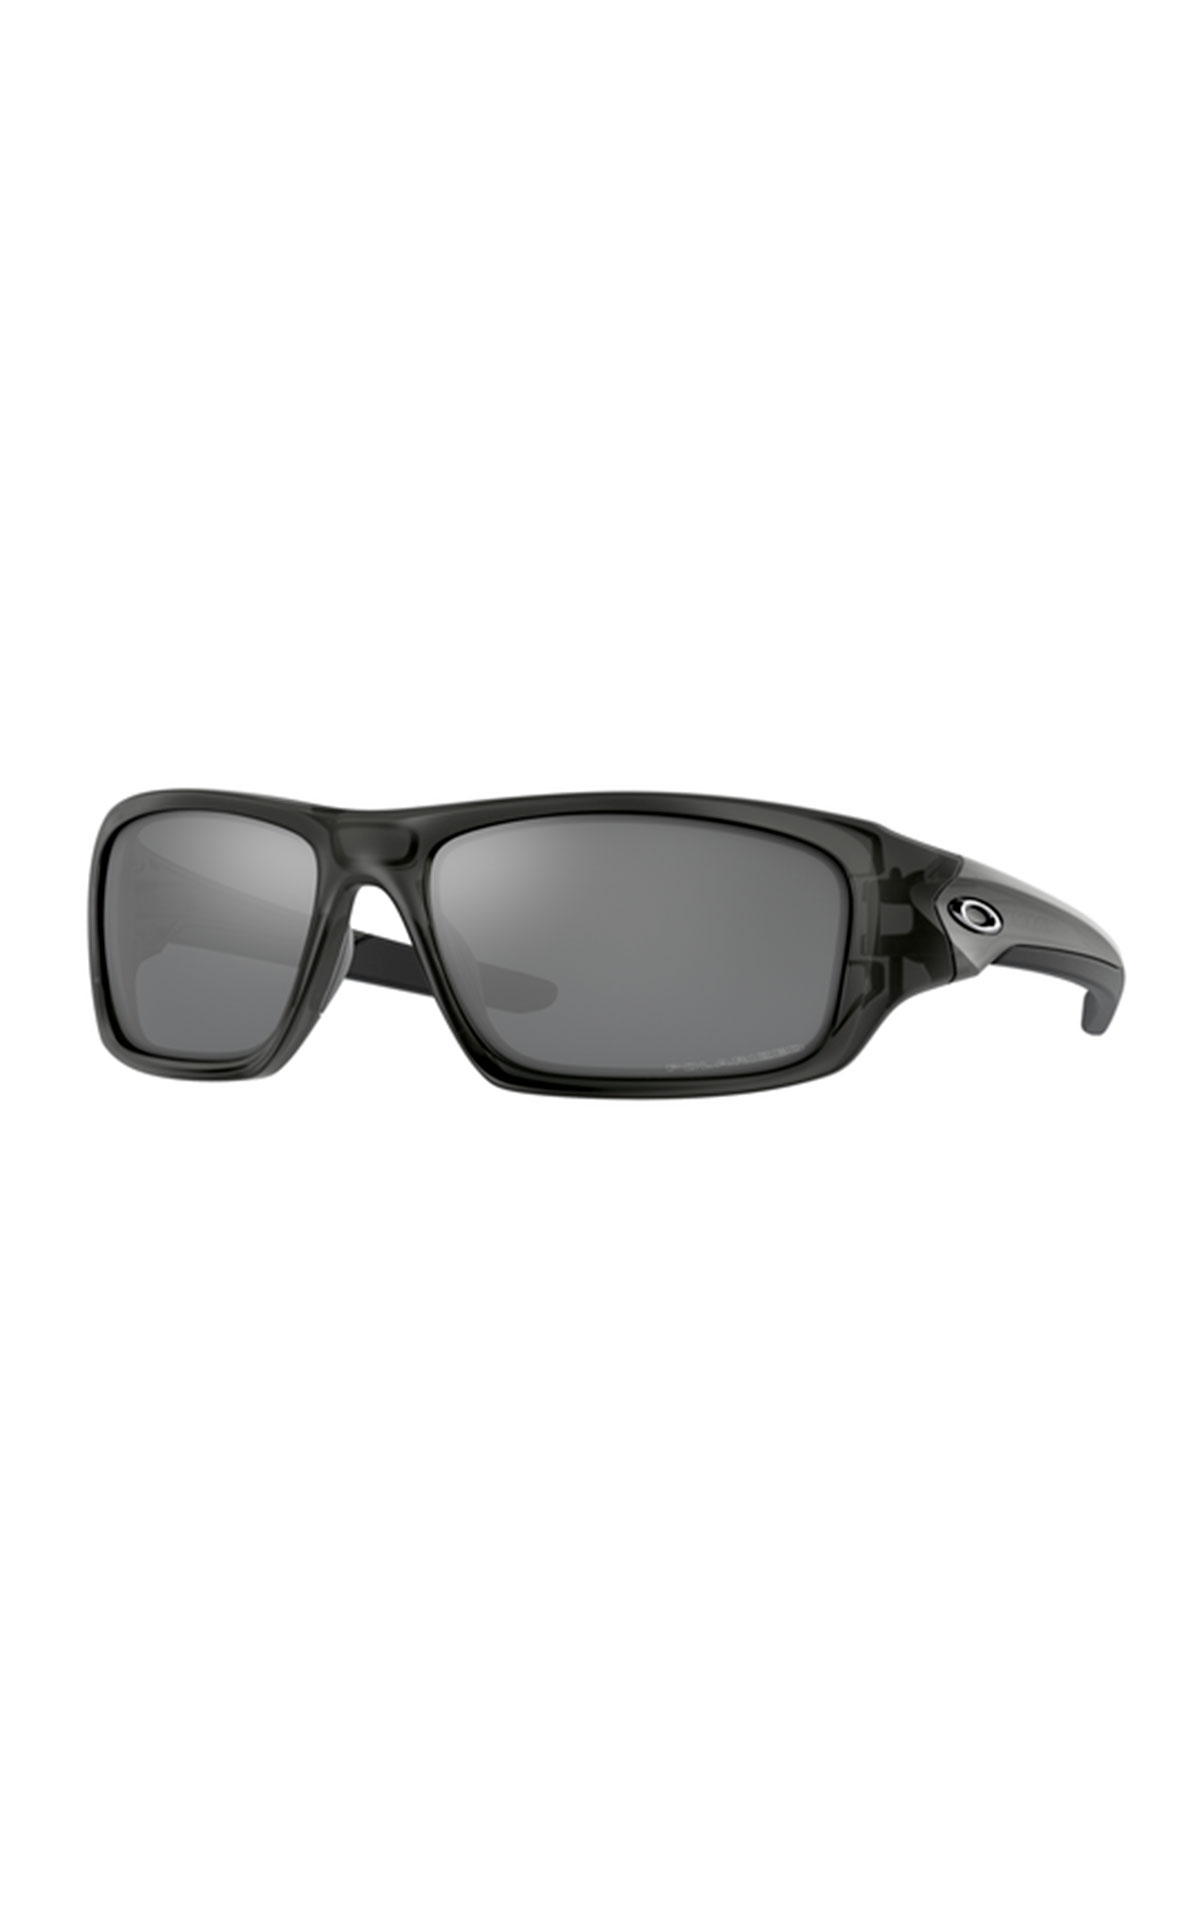 Sunglasses black Oakley